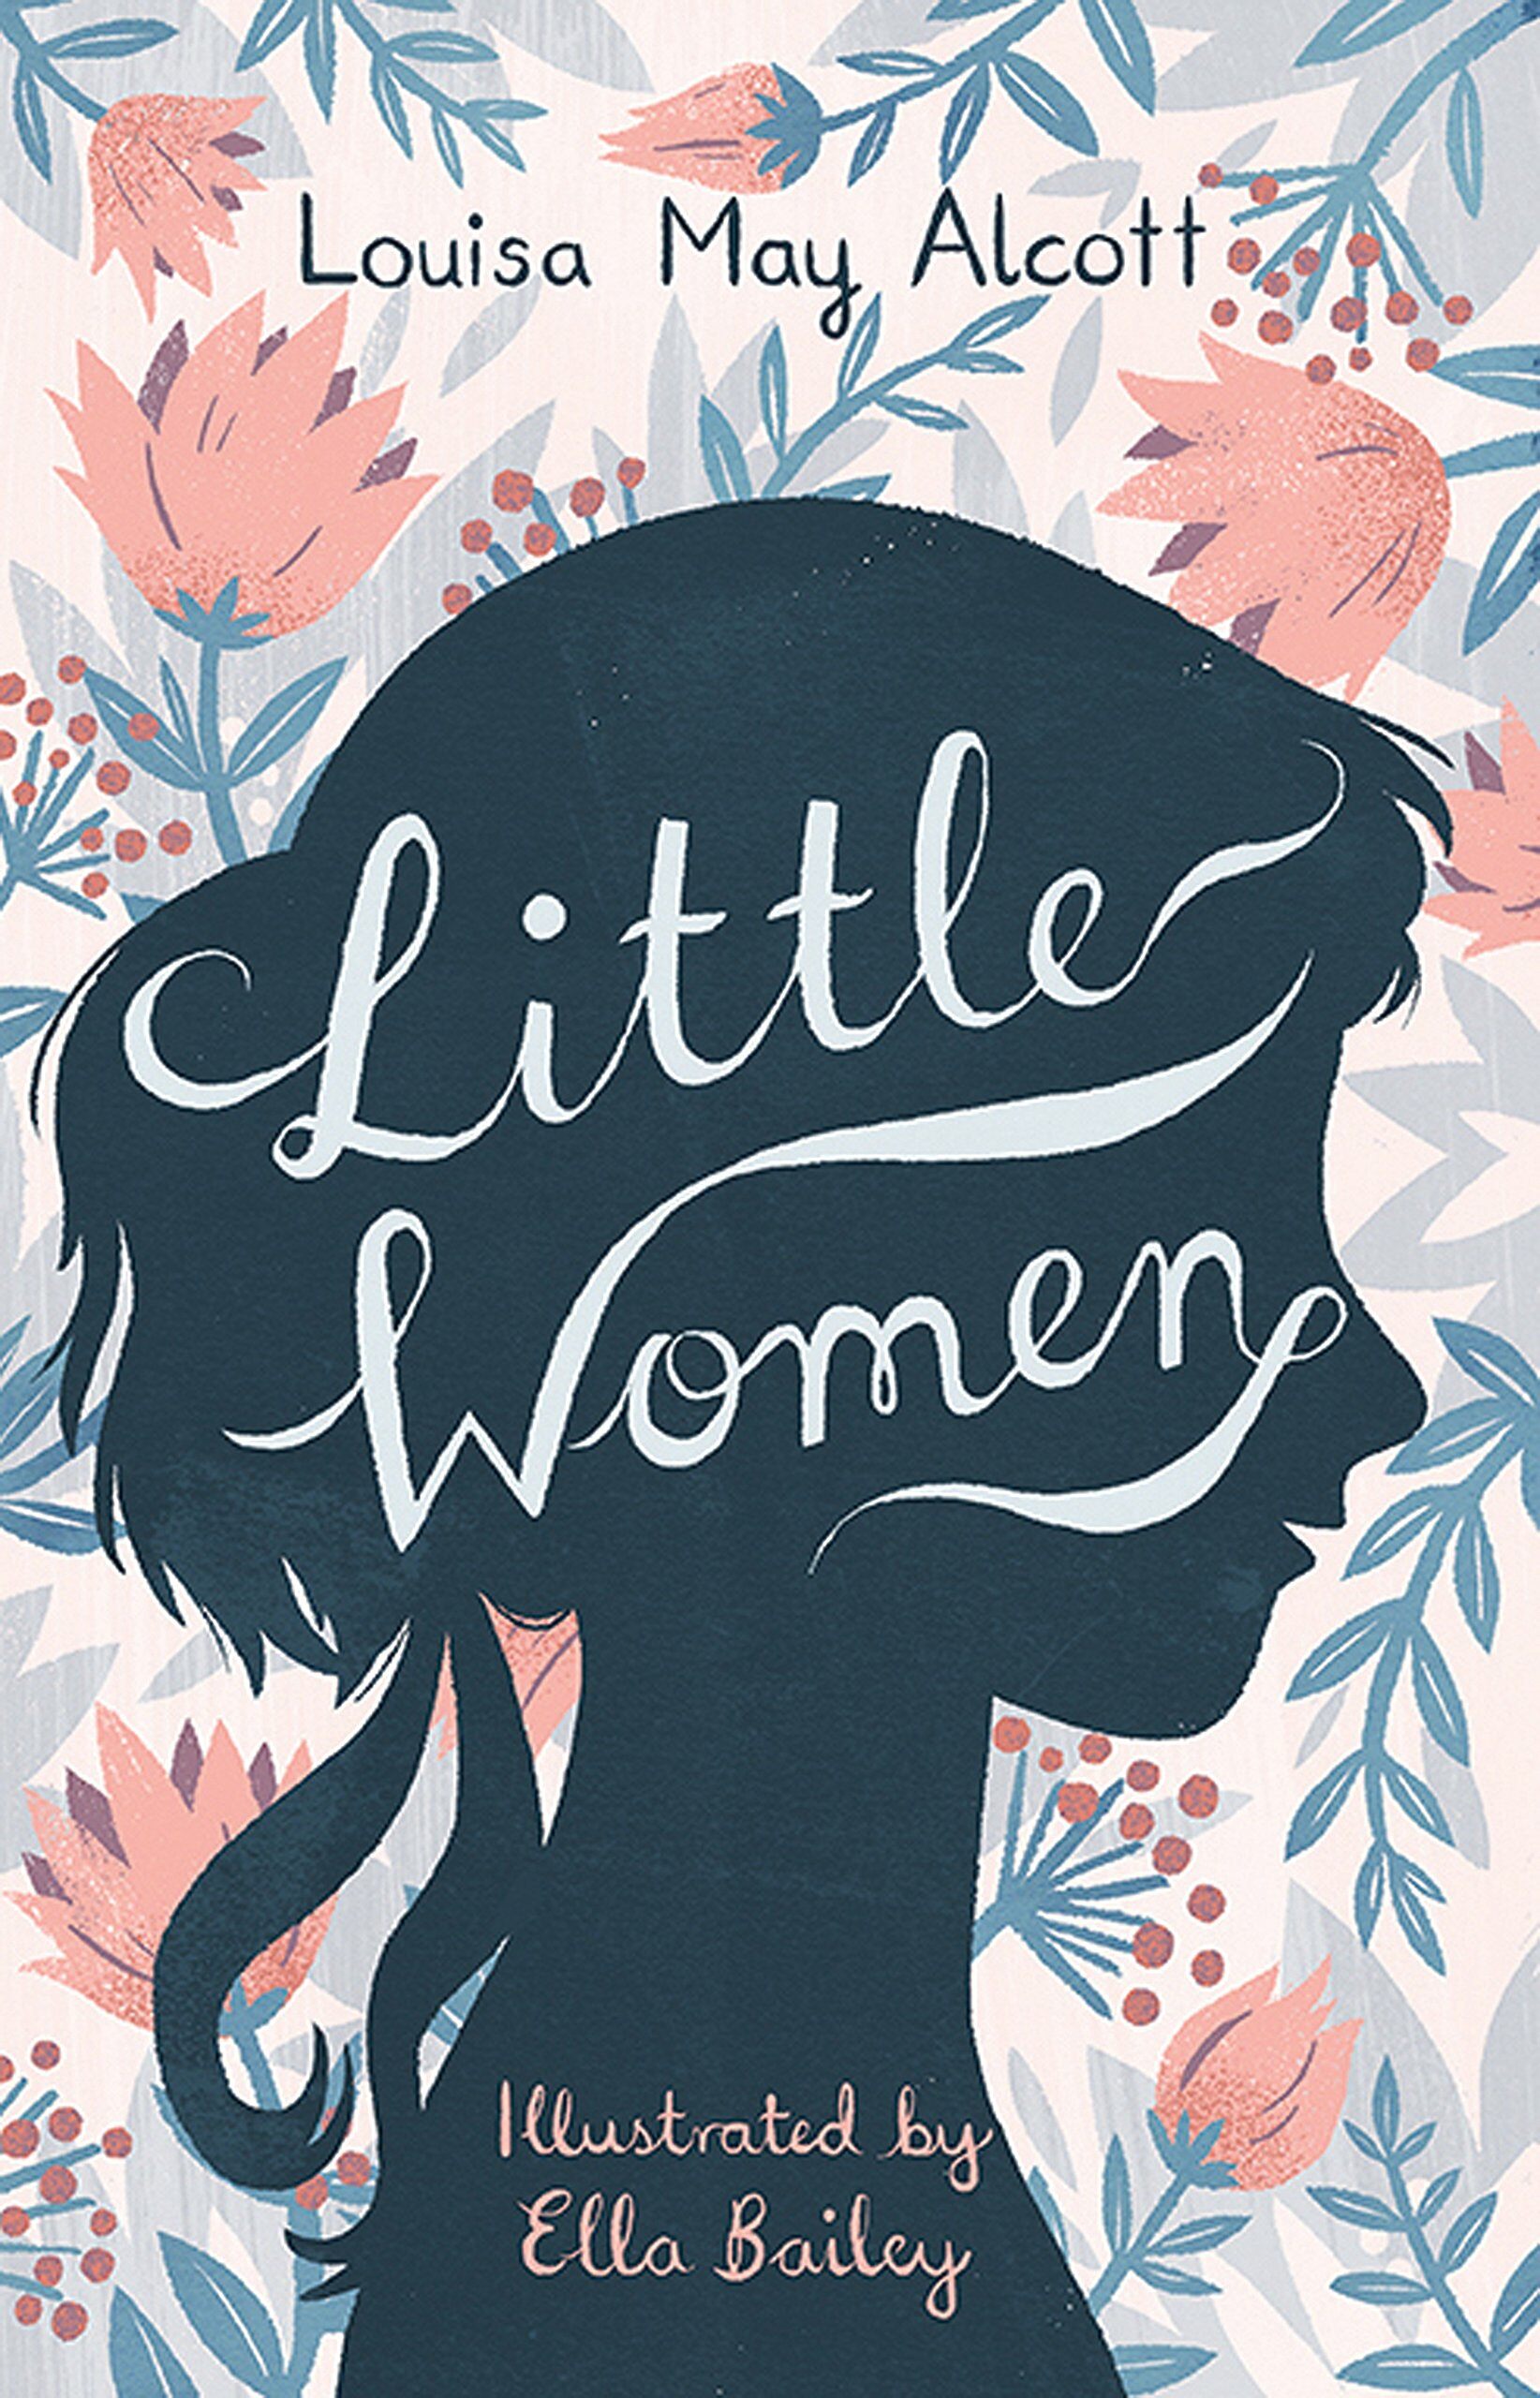 Little Women (Paperback)